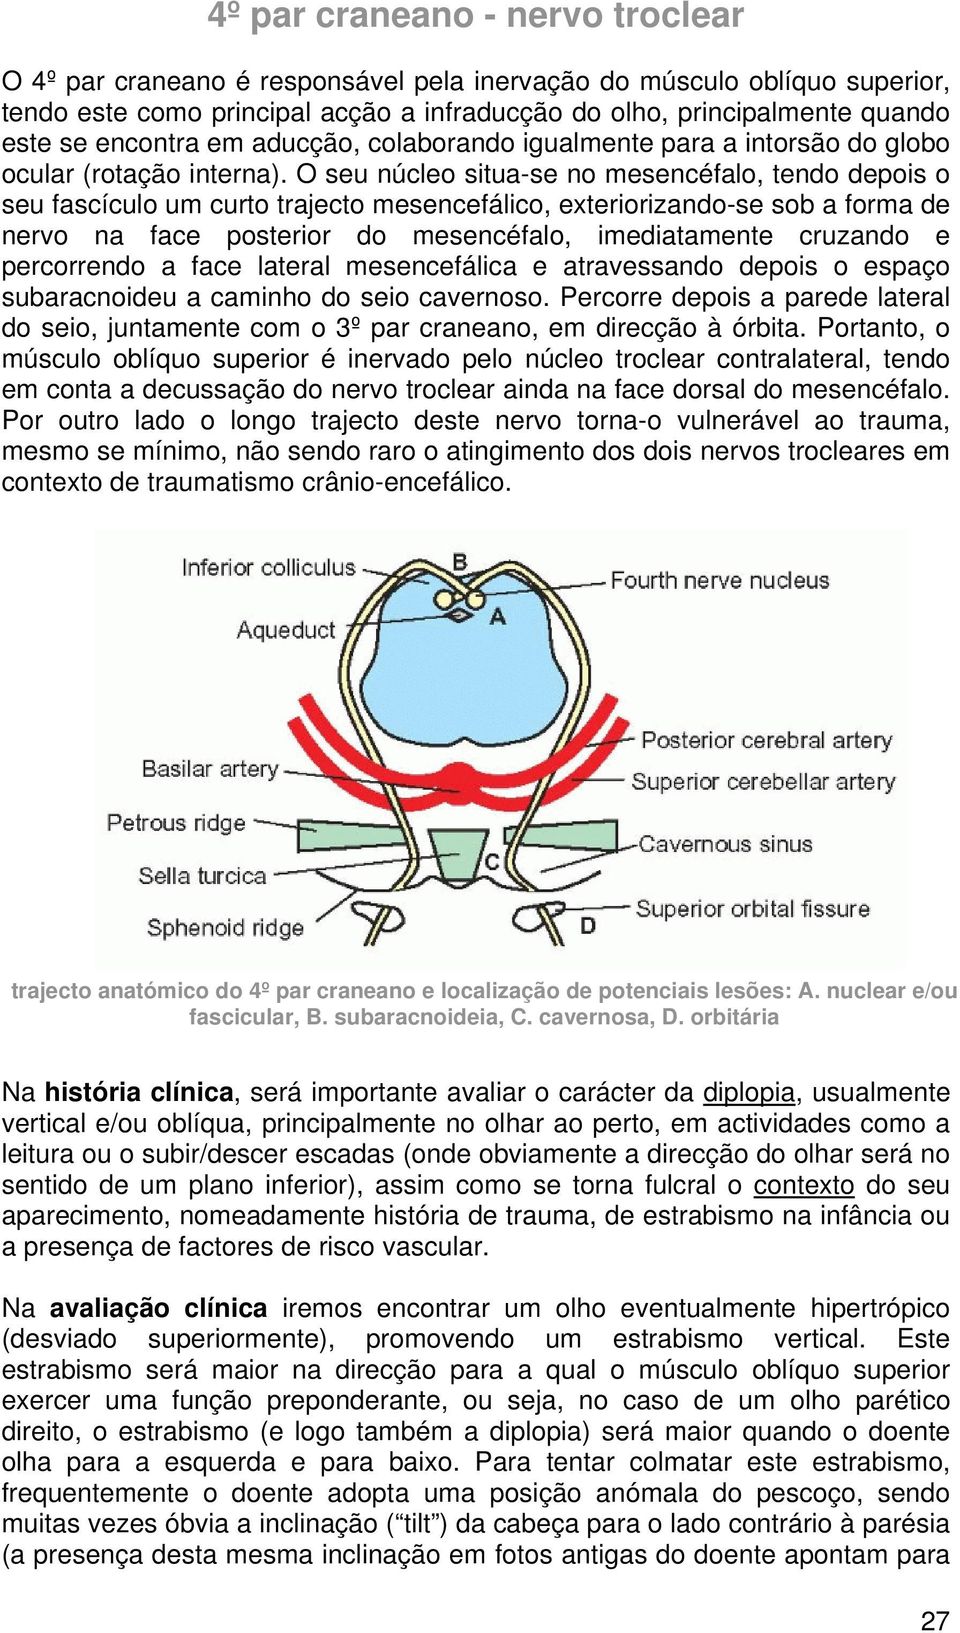 O seu núcleo situa-se no mesencéfalo, tendo depois o seu fascículo um curto trajecto mesencefálico, exteriorizando-se sob a forma de nervo na face posterior do mesencéfalo, imediatamente cruzando e